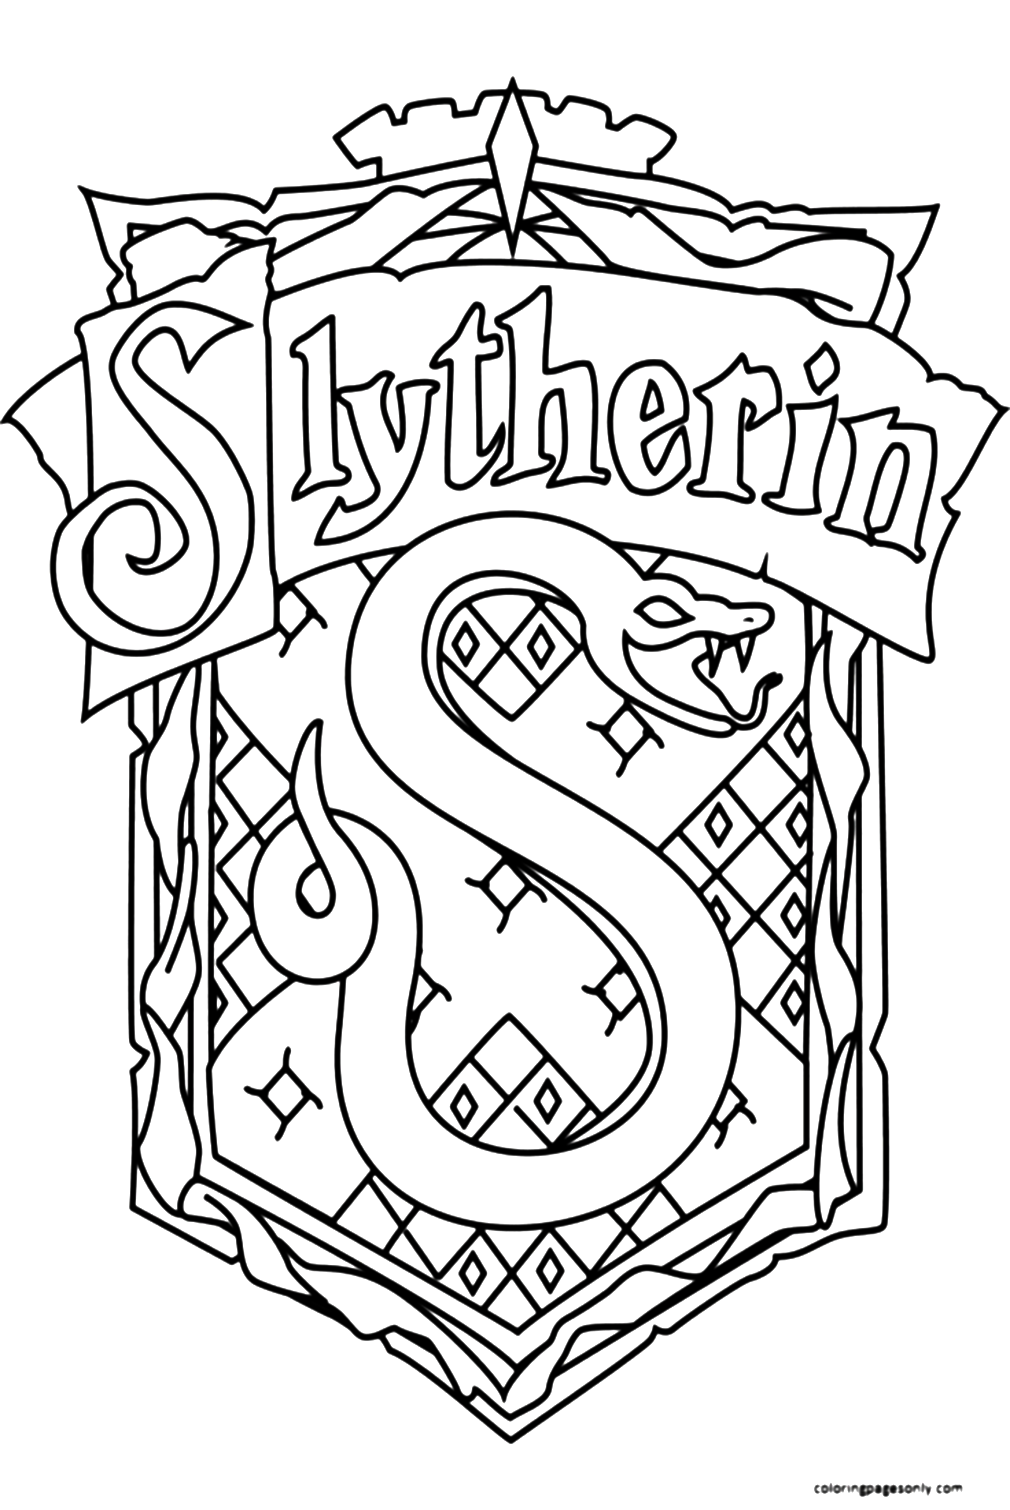 Символ Слизерина из Гарри Поттера